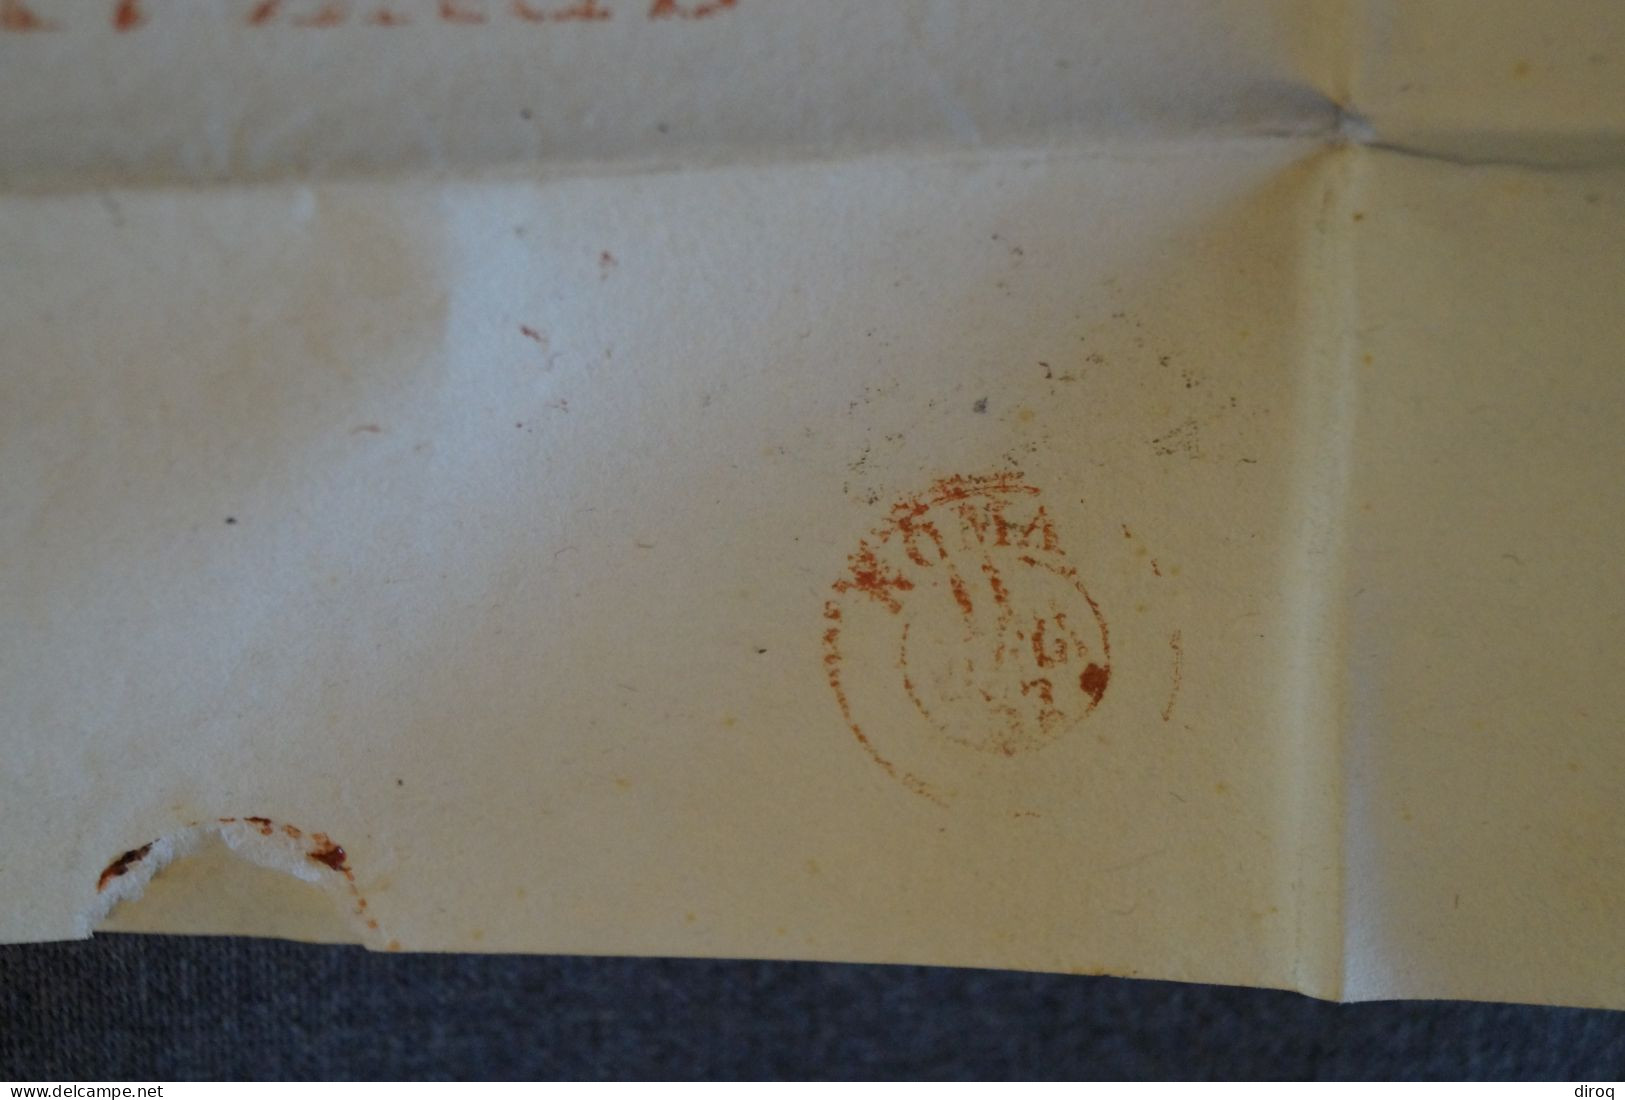 Ancien Envoi Franco Bollo Postale BAJ-2, Italia 1857,courrier à Identifier,pour Collection - Papal States